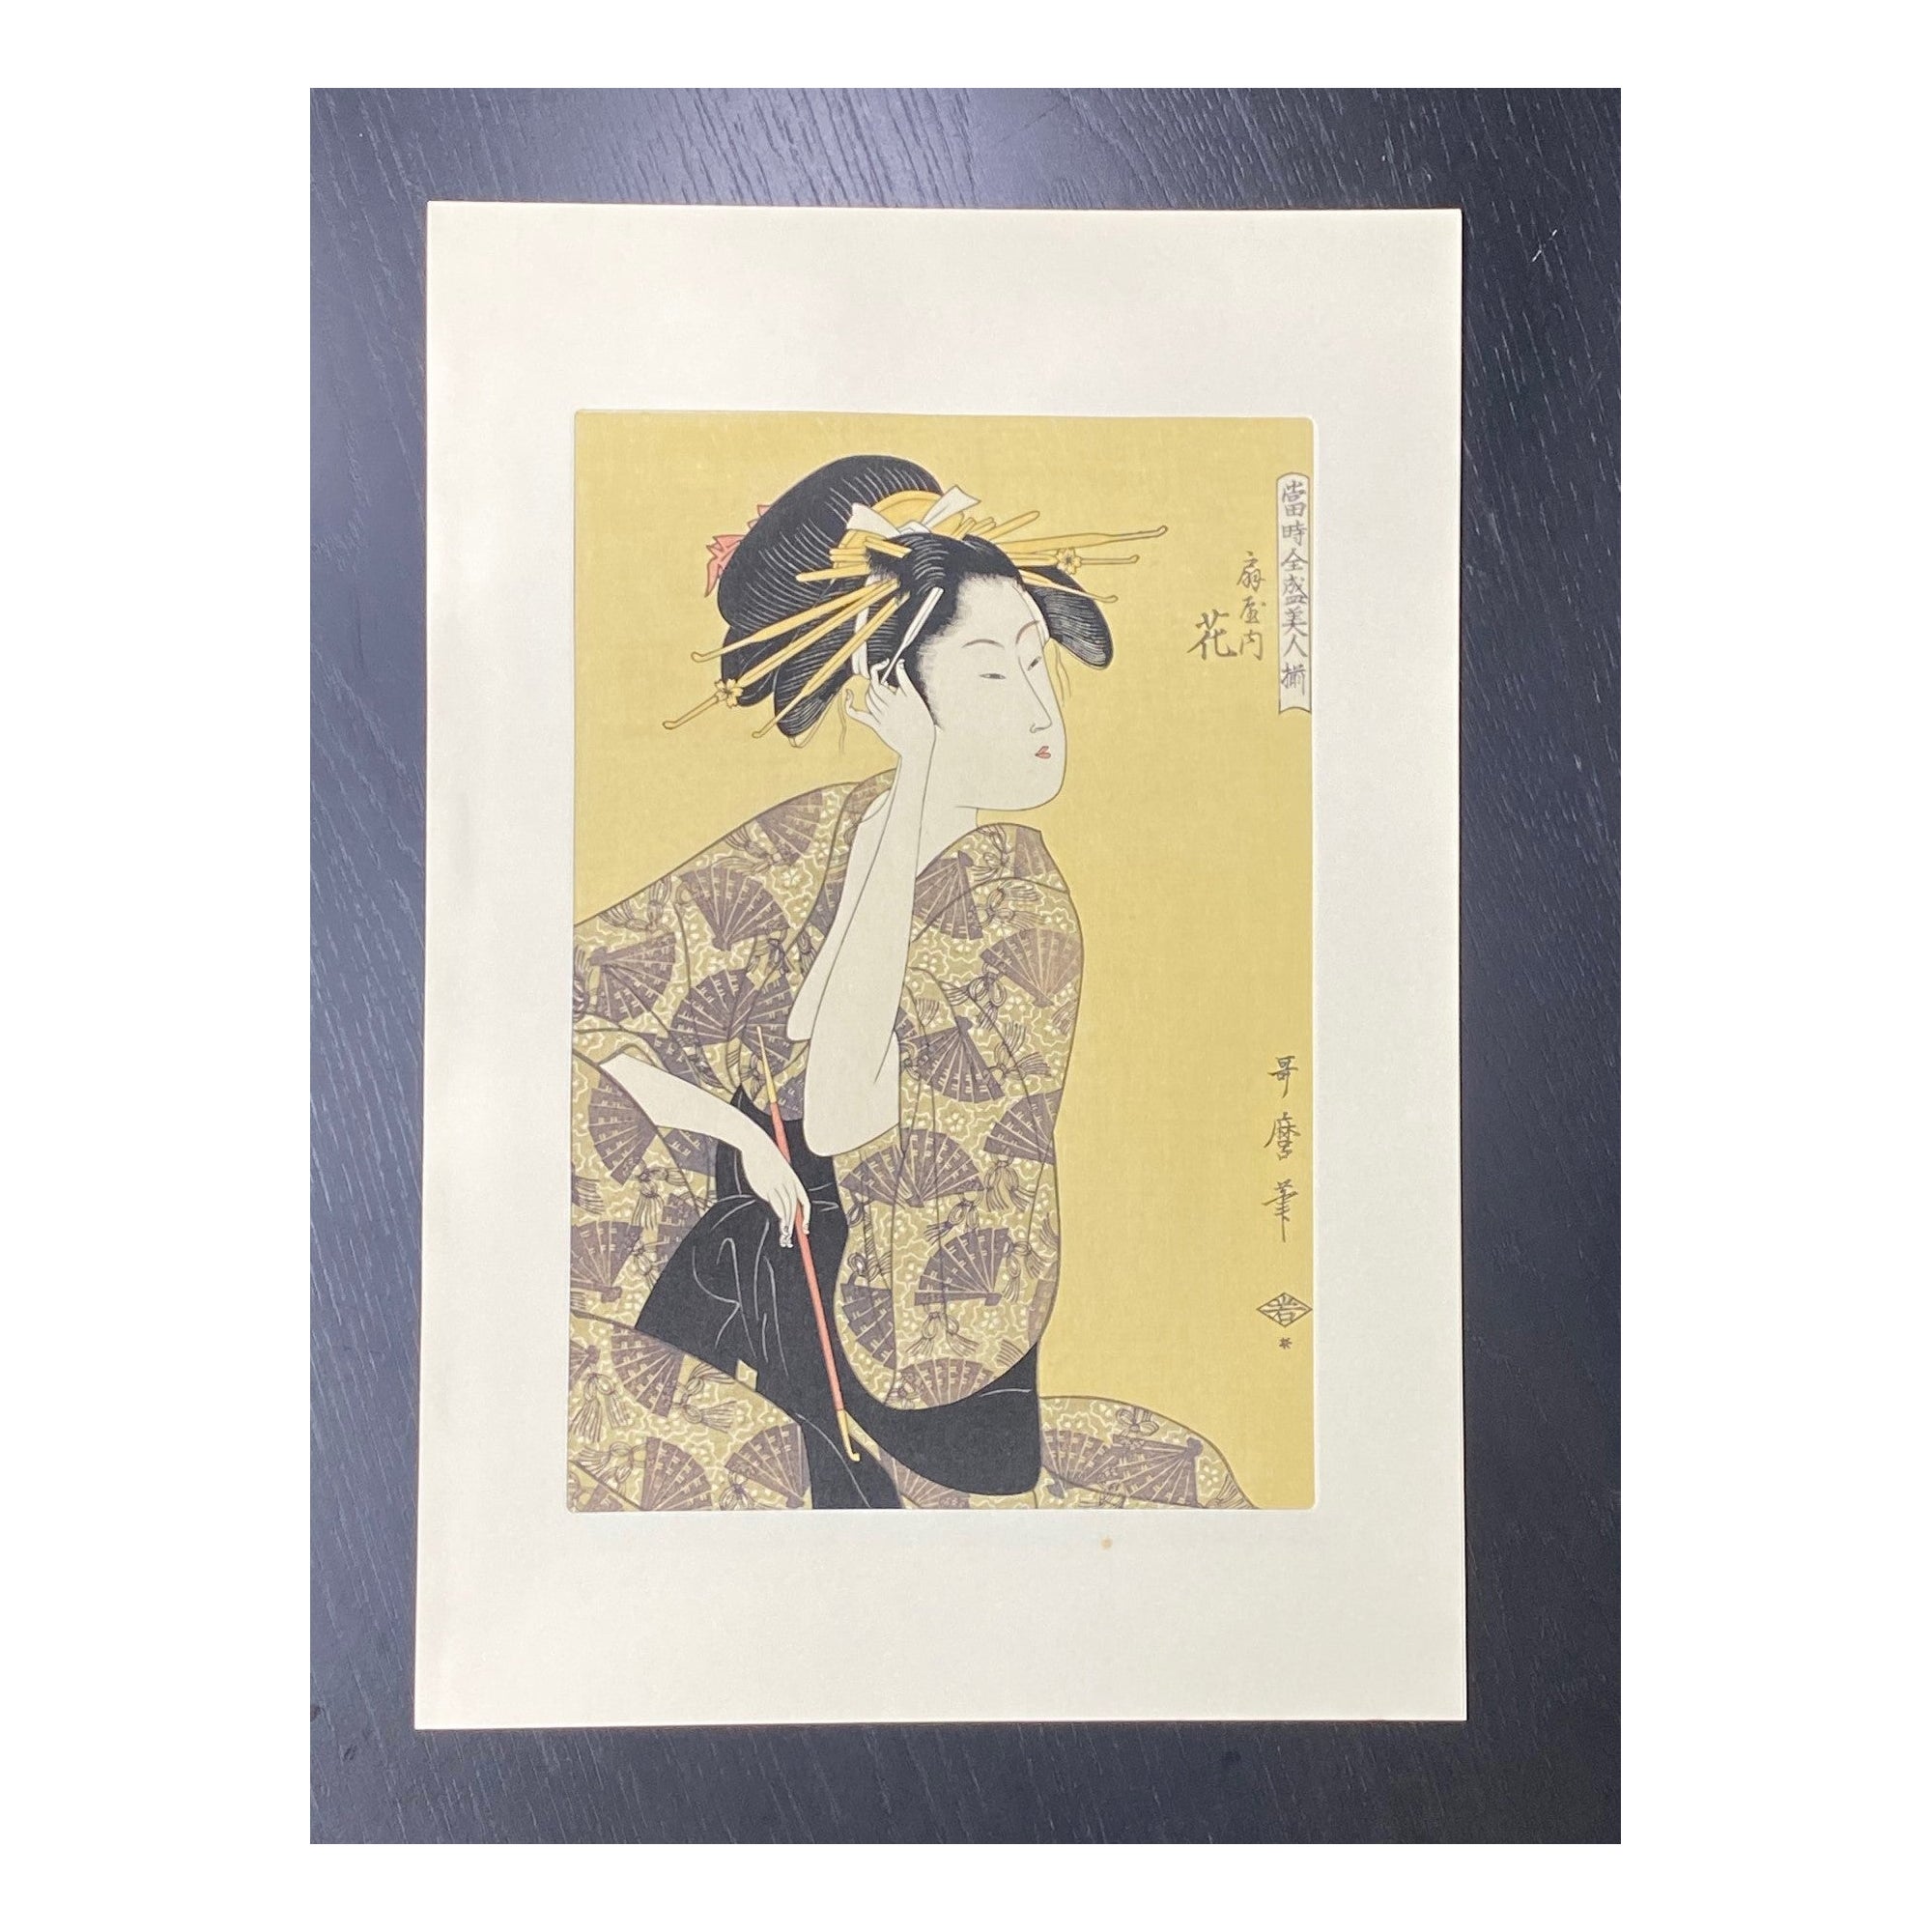 Impression japonaise sur bois d'une femme Edo Geisha avec des épingles à cheveux jaunes et une pipe en opium